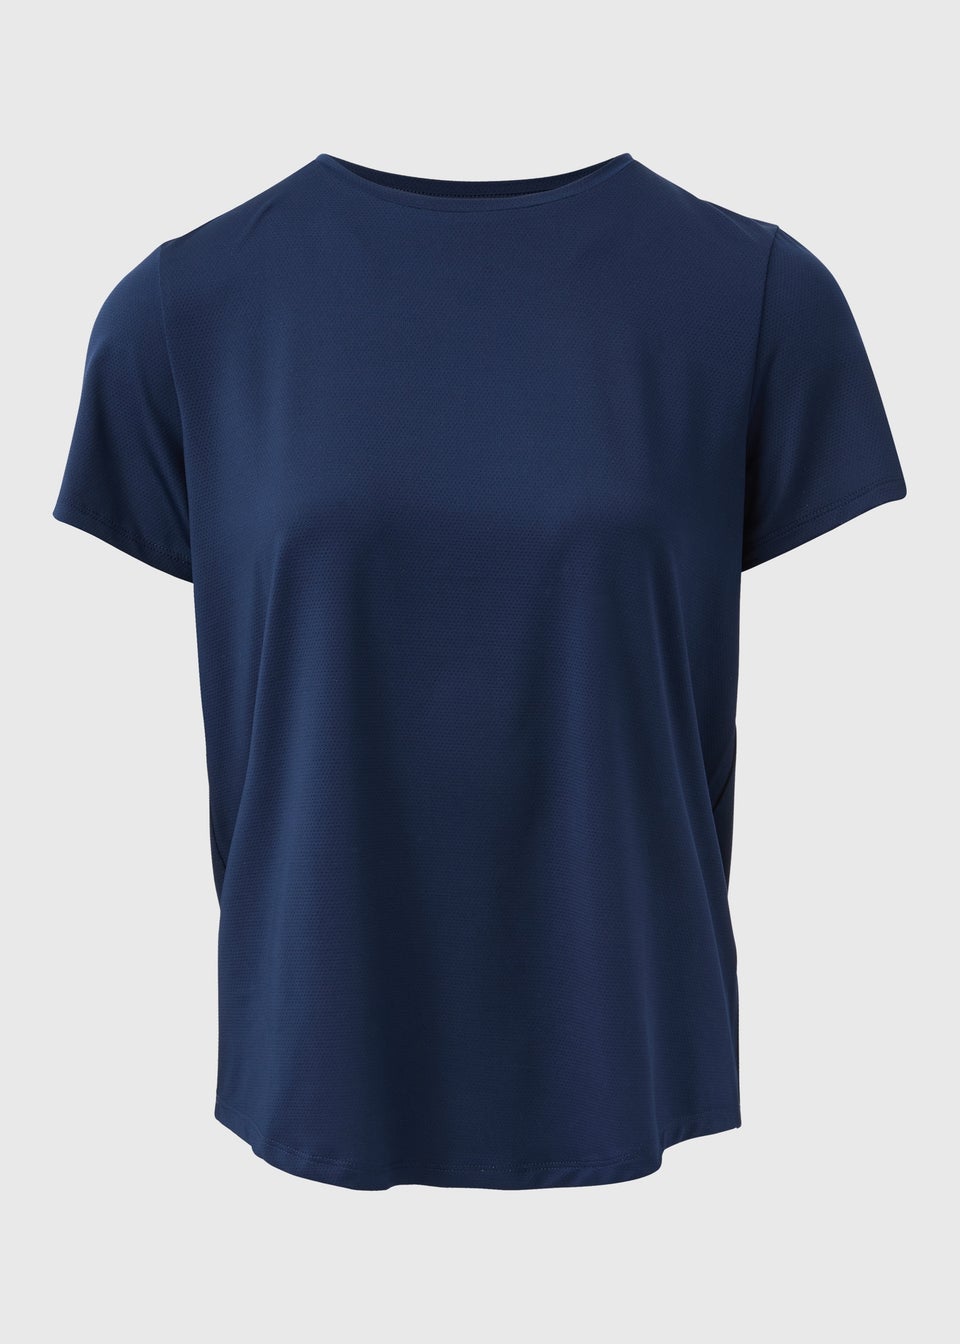 Souluxe Navy Blue Plain T-Shirt